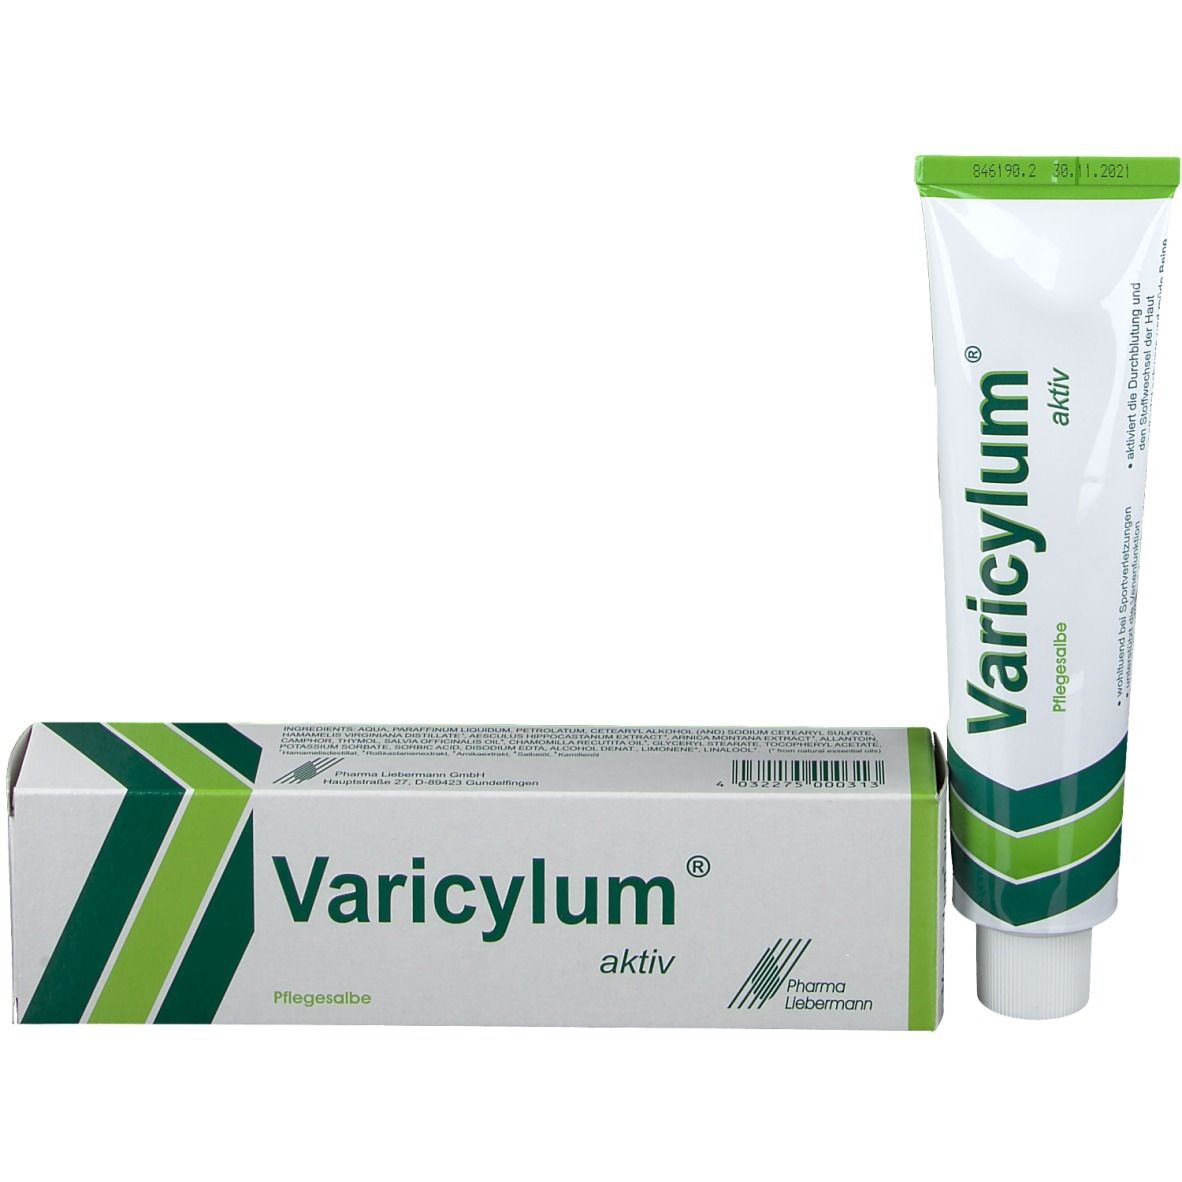 Varicylum® aktiv Pflegesalbe